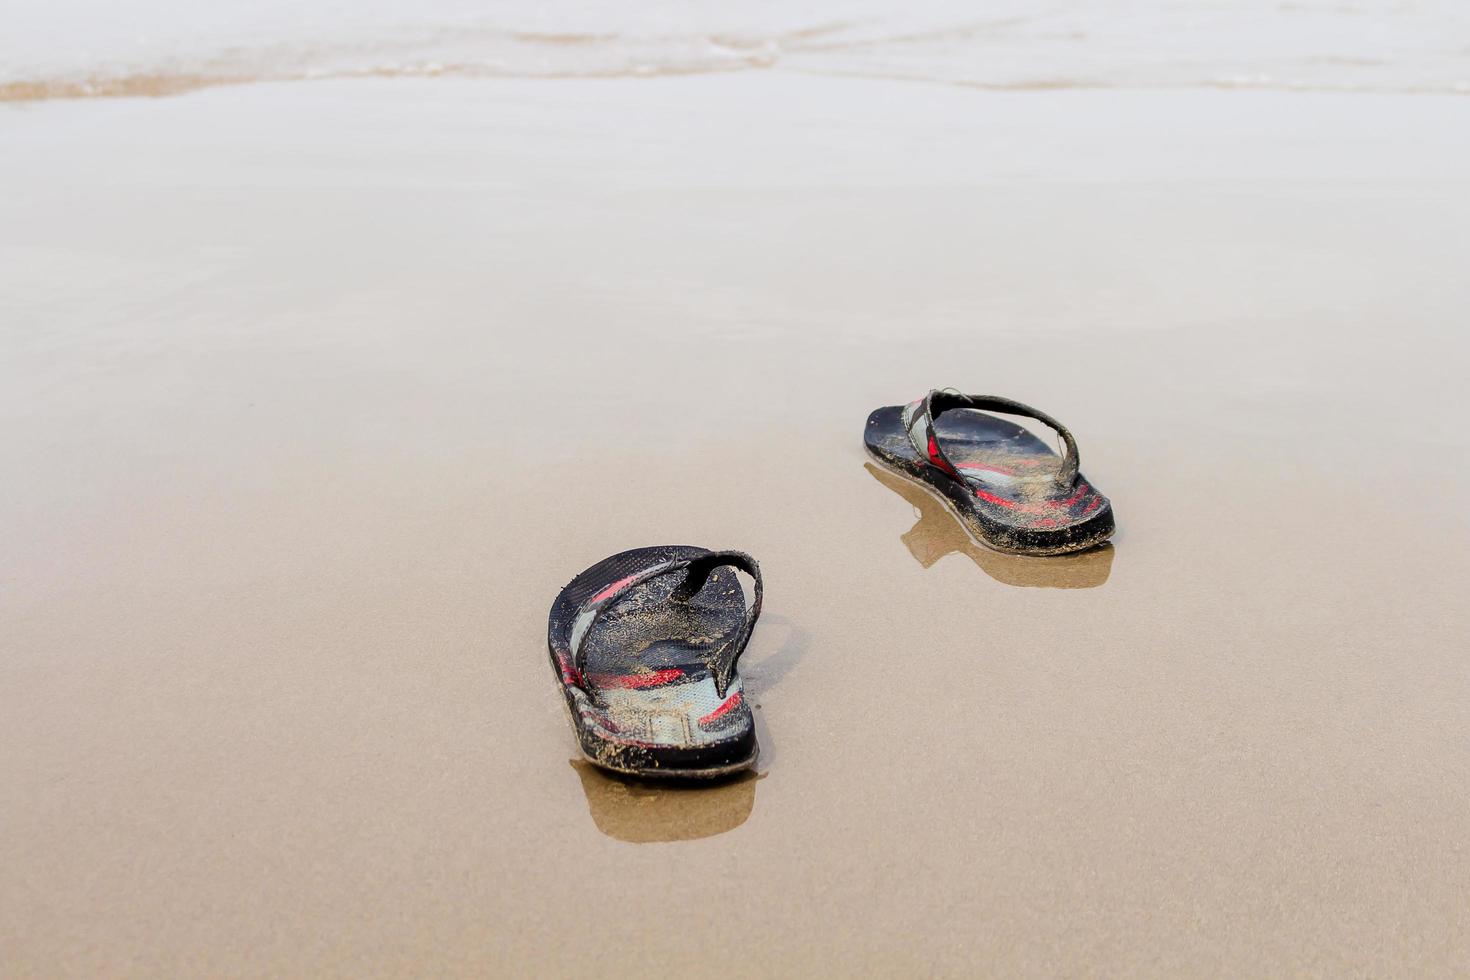 ta av dig skorna för att simma havet i relax-semestern foto